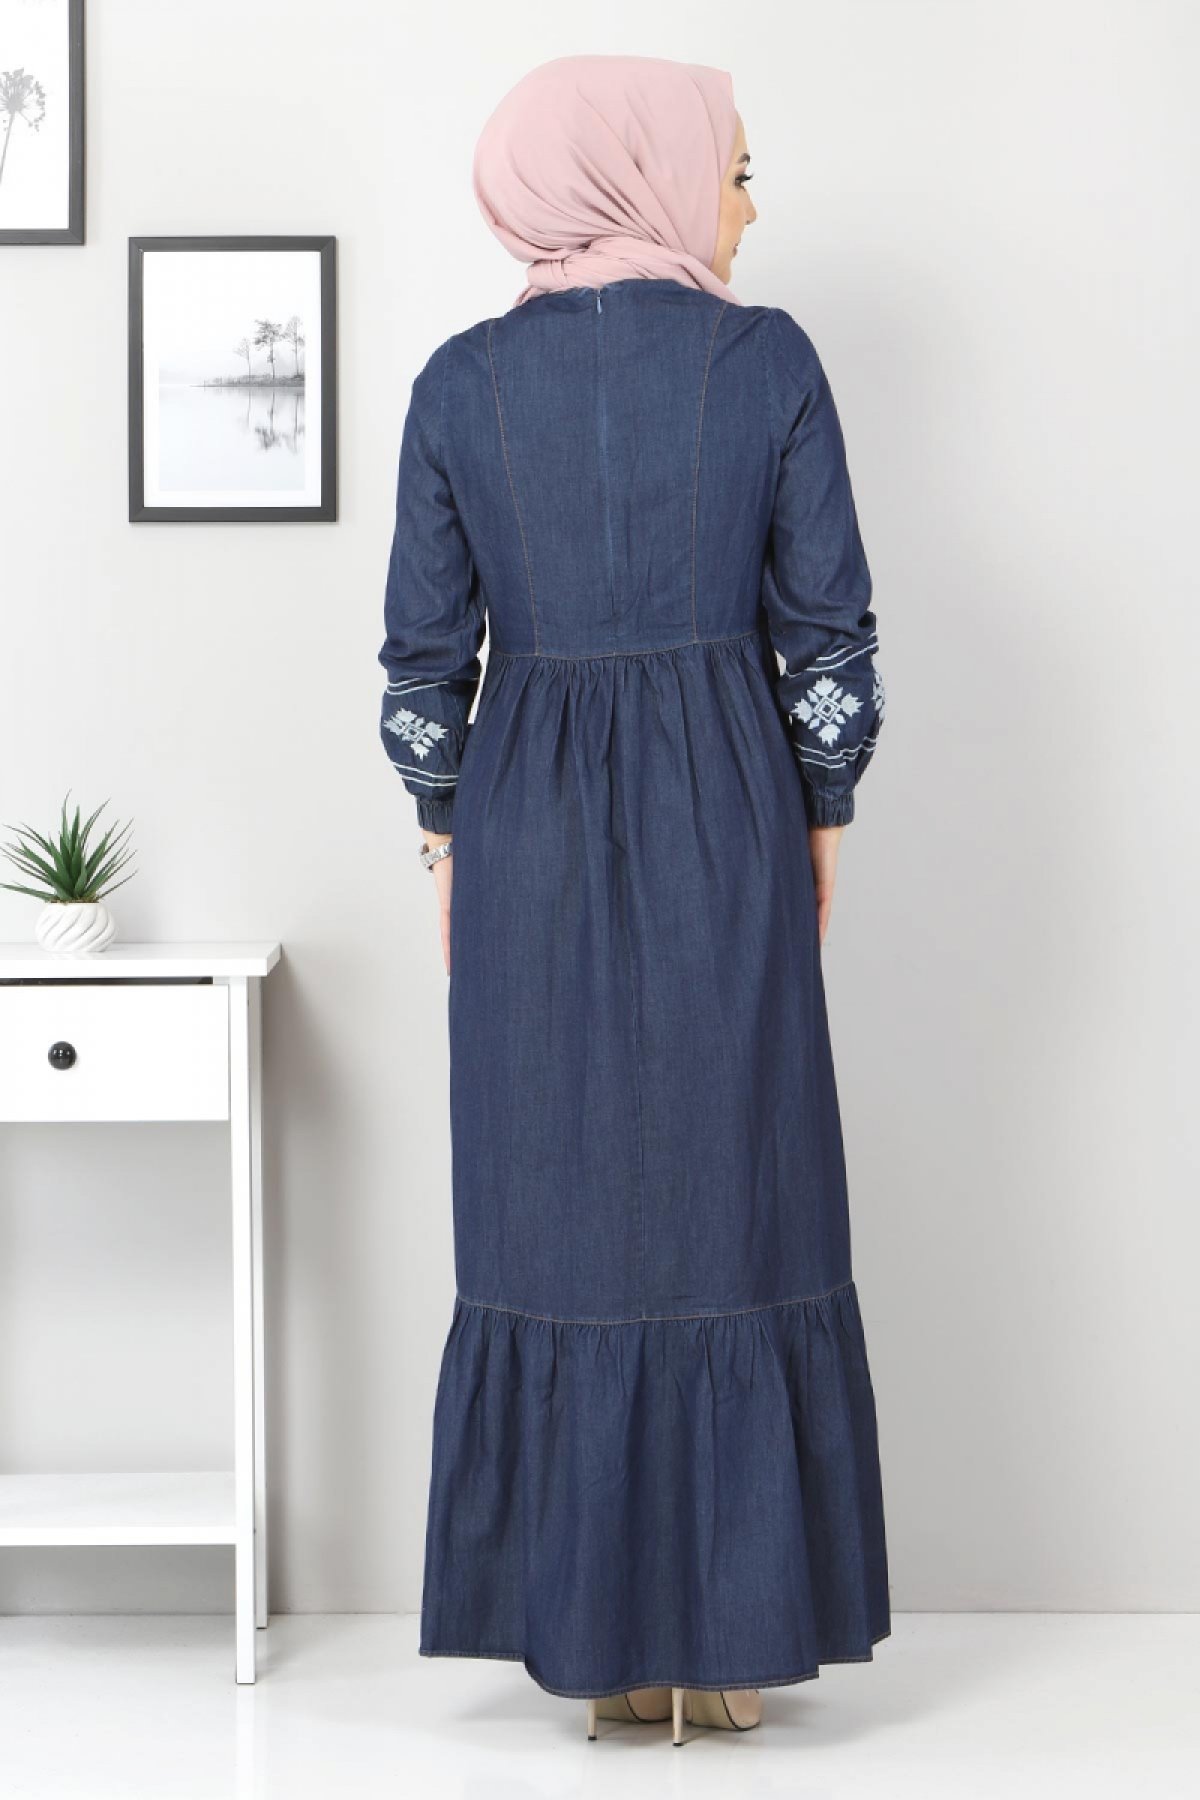 Önü Nakışlı Eteği Pileli Elbise TSD6152 Koyu Mavi